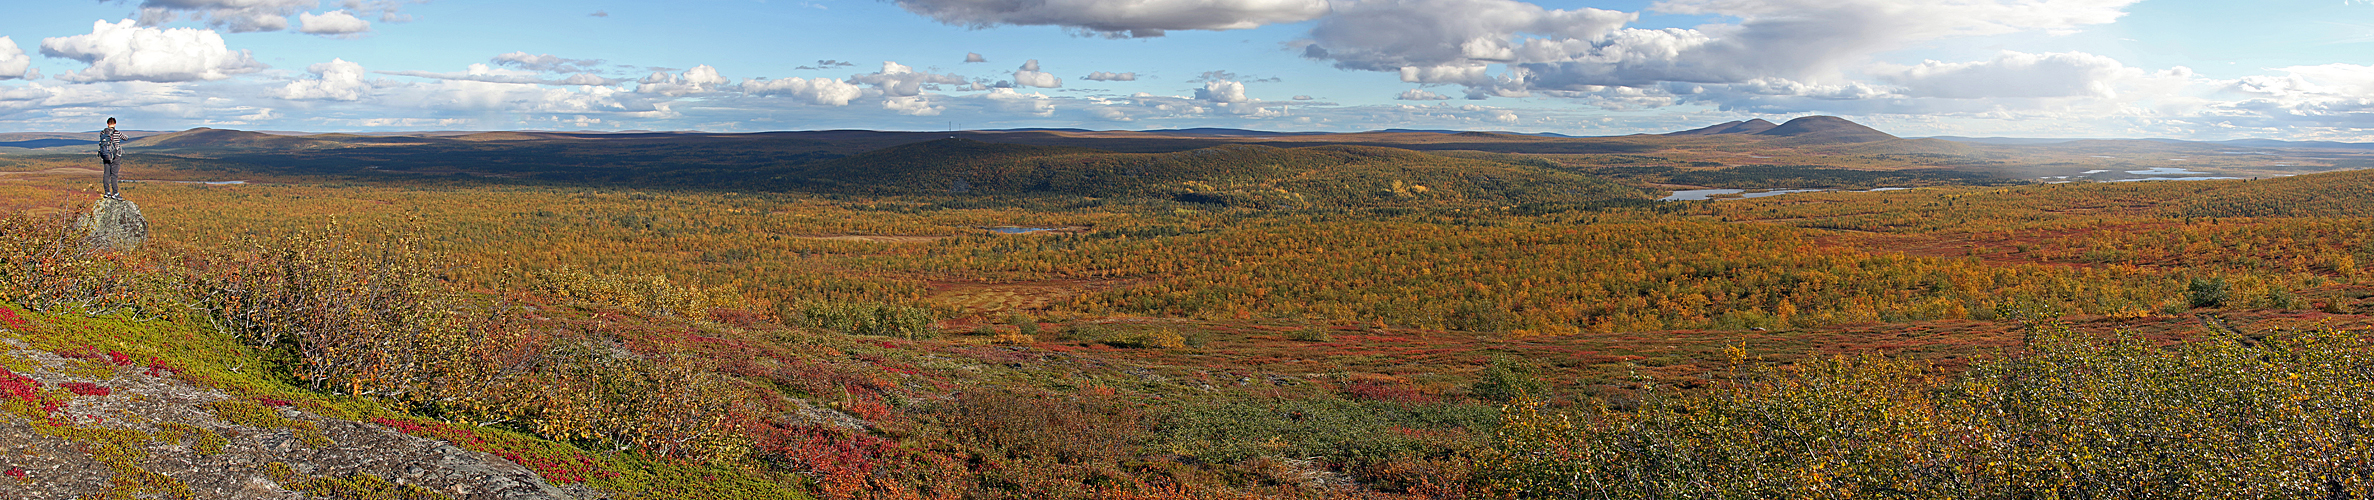 LAPONIE SUEDOISE - photo panoramique de la vue vers le sud, depuis le sommet de la colline Sämmäräinen